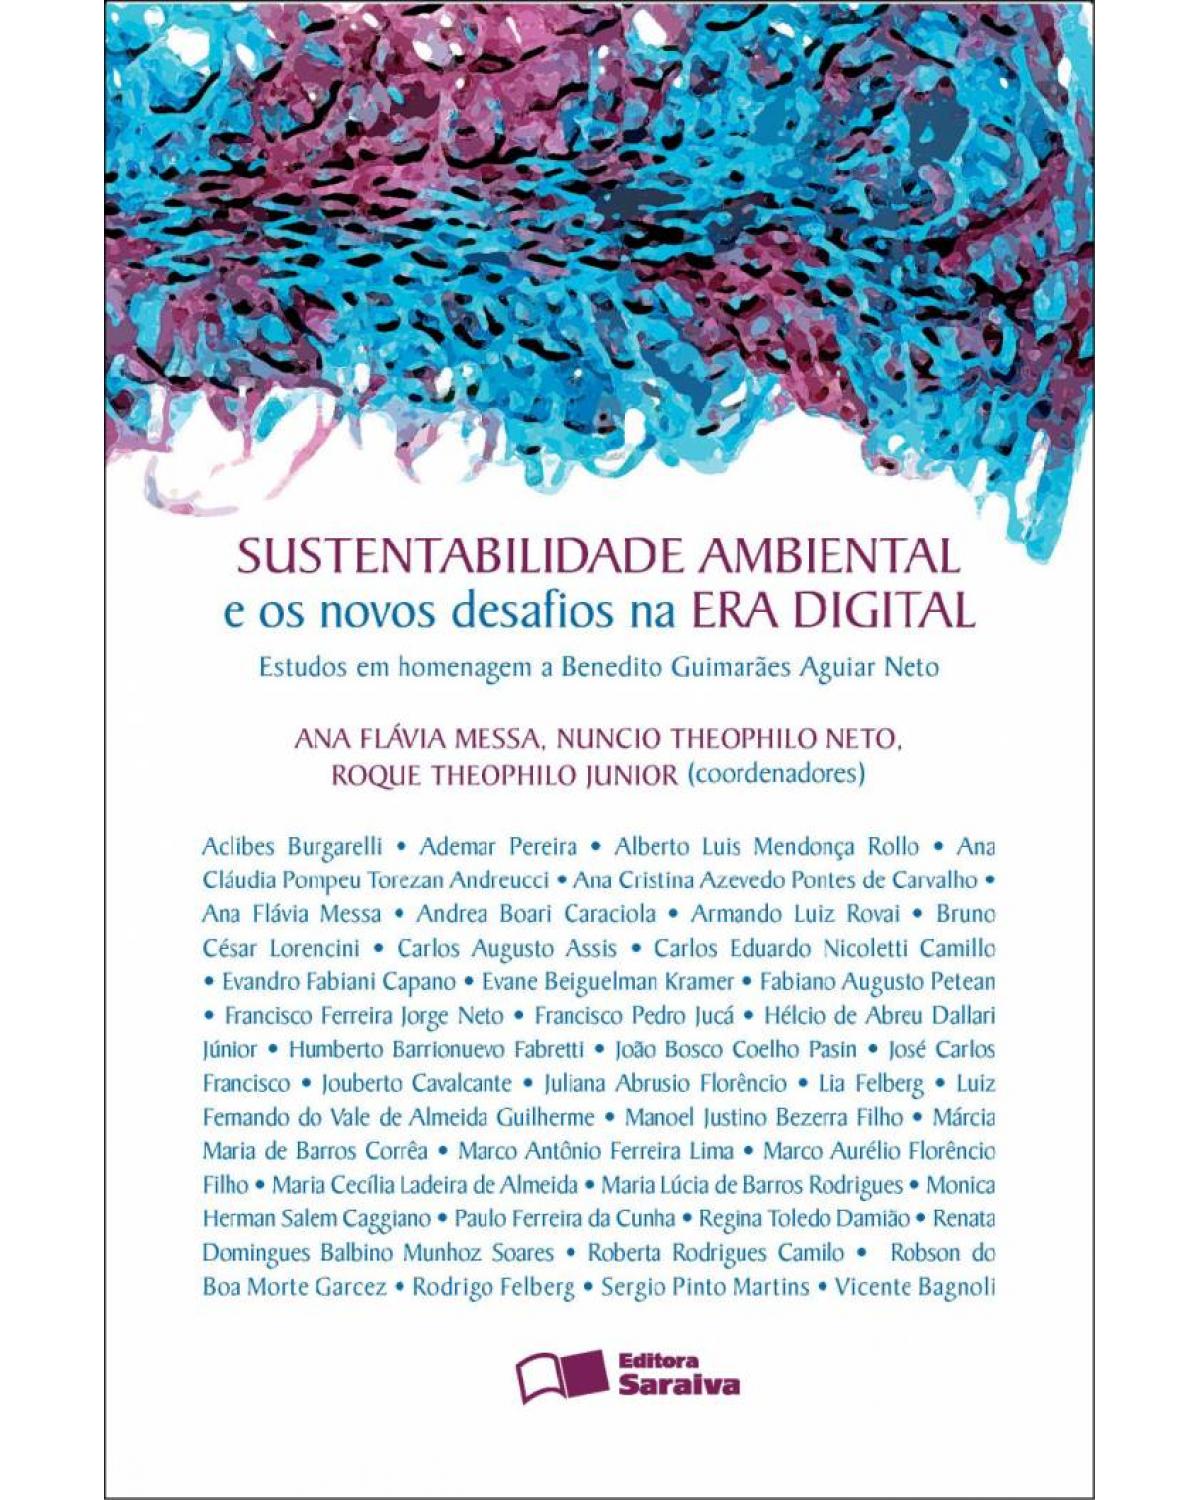 Sustentabilidade ambiental e os novos desafios na era digital - estudos em homenagem a Benedito Guimarães Aguiar Neto - 1ª Edição | 2011